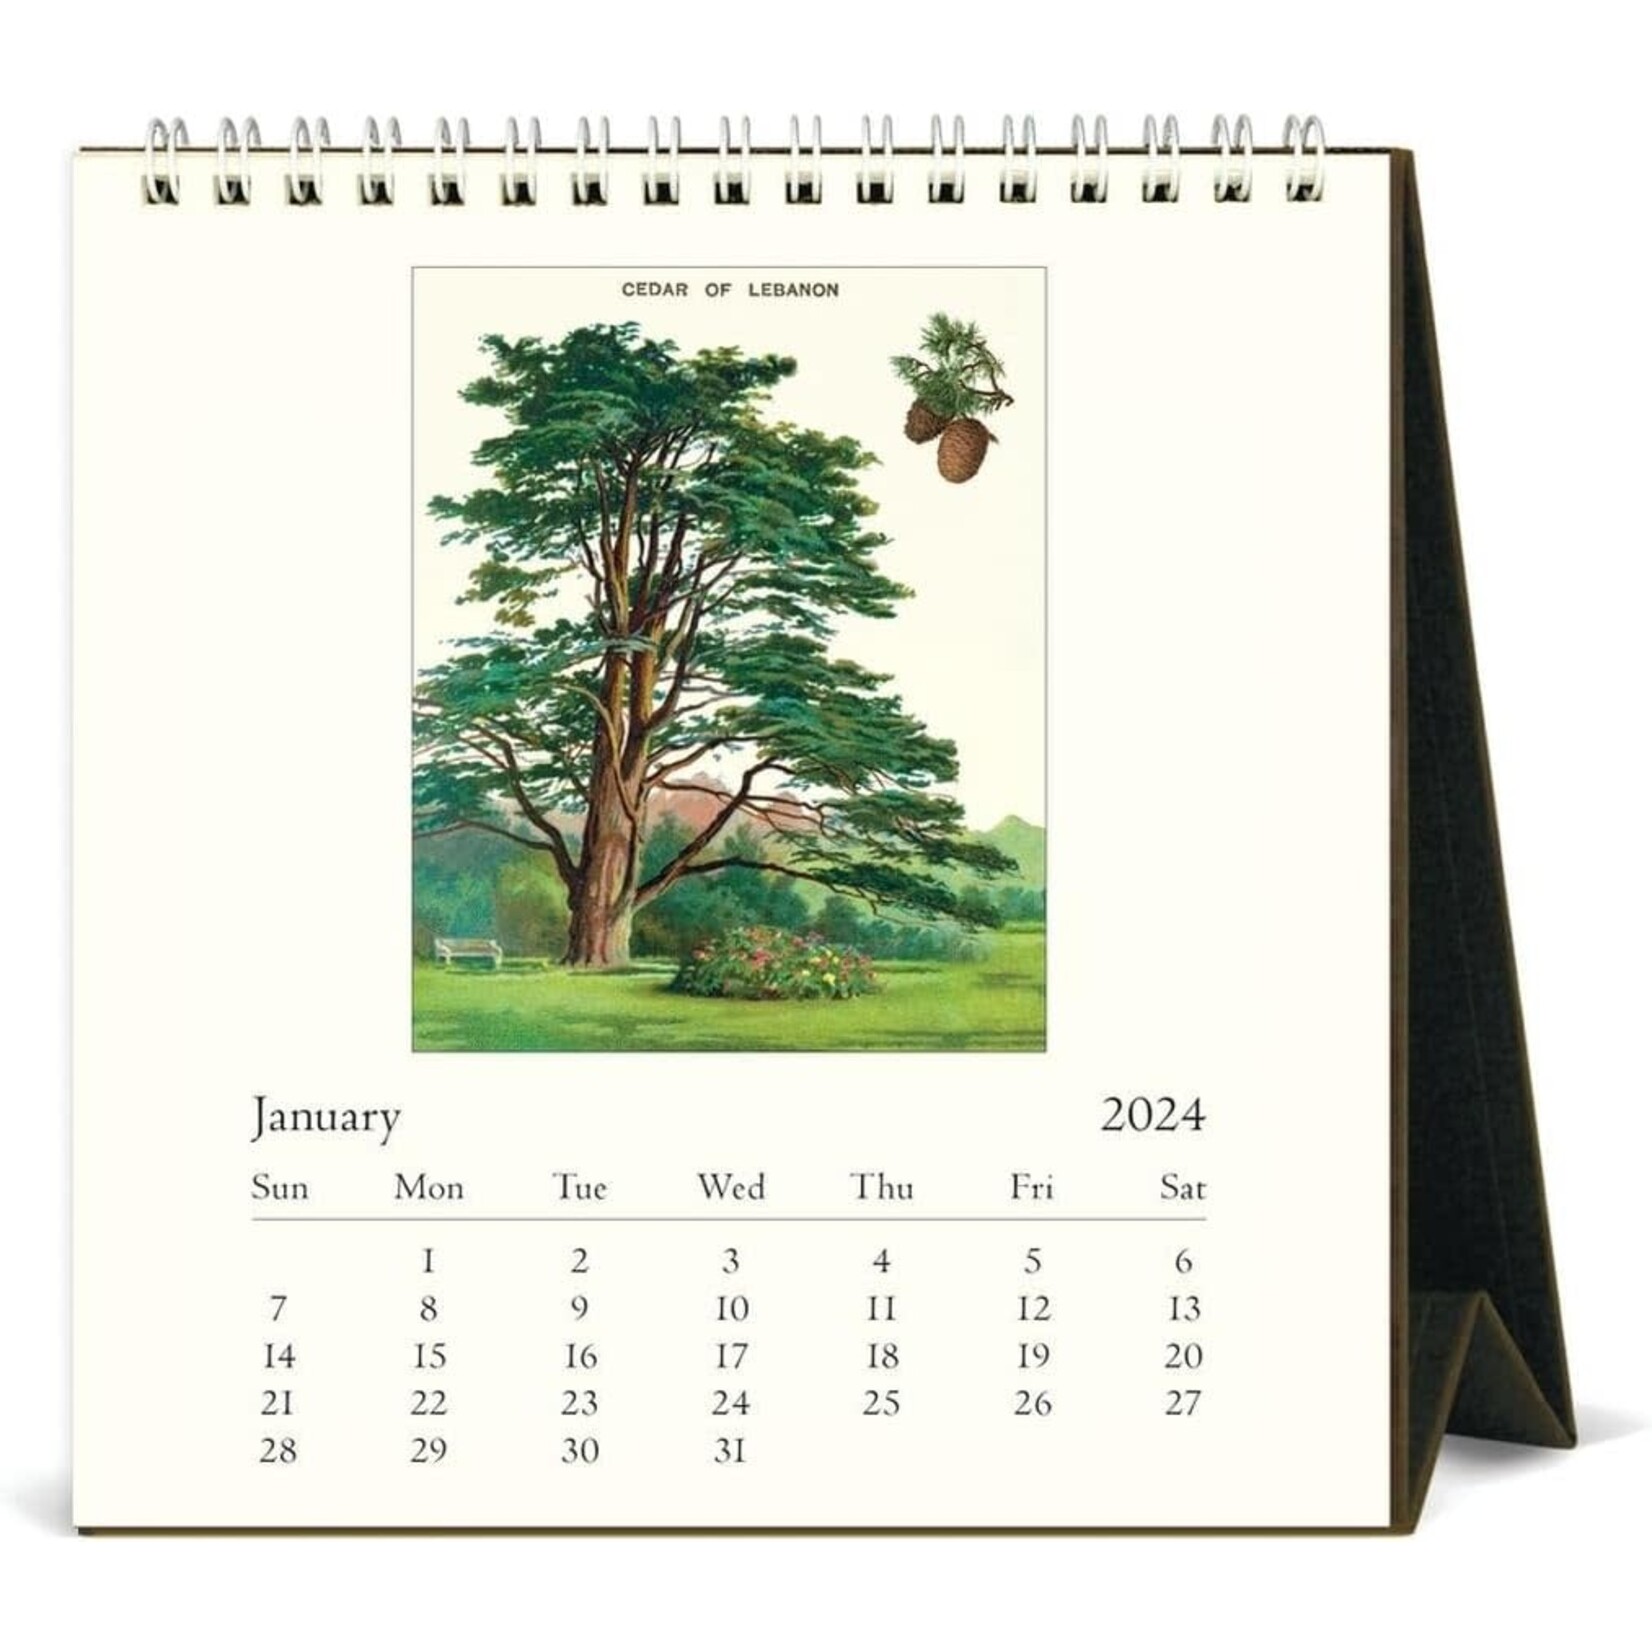 Arboretum Desk Calendar 2024